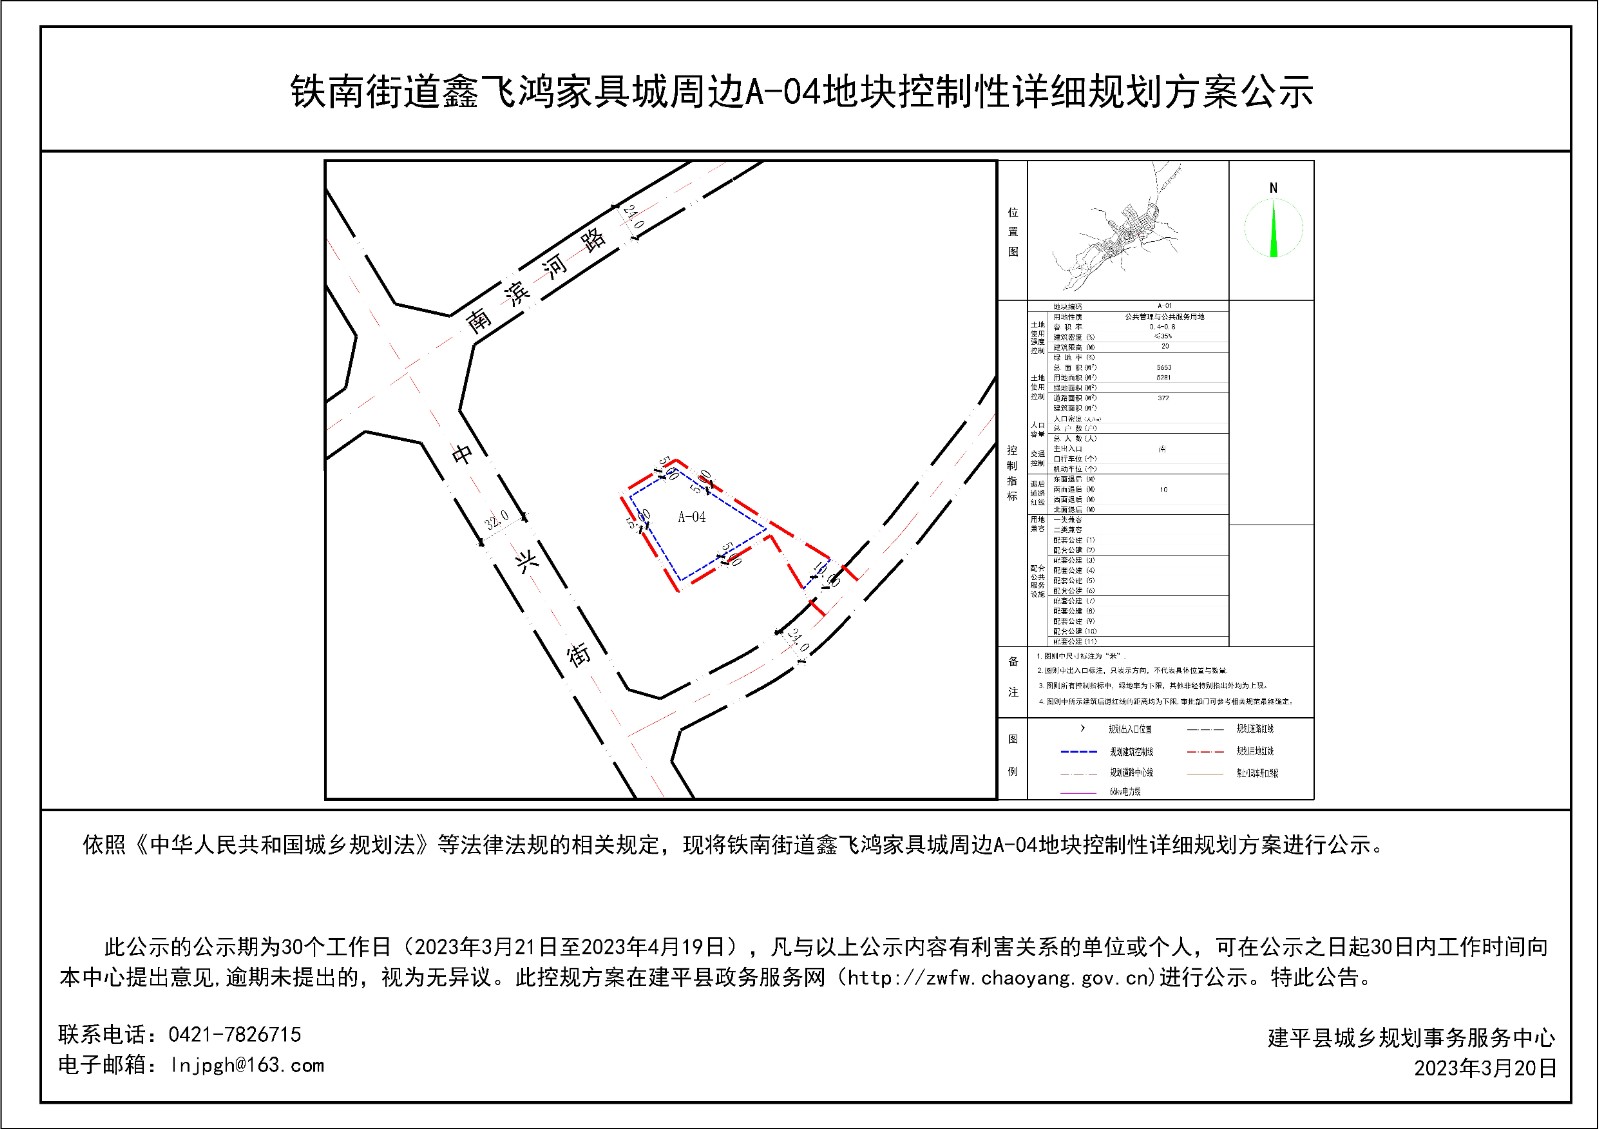 铁南街道鑫飞鸿家具城周边A-04地块控制性详细规划方案公示-Model.jpg